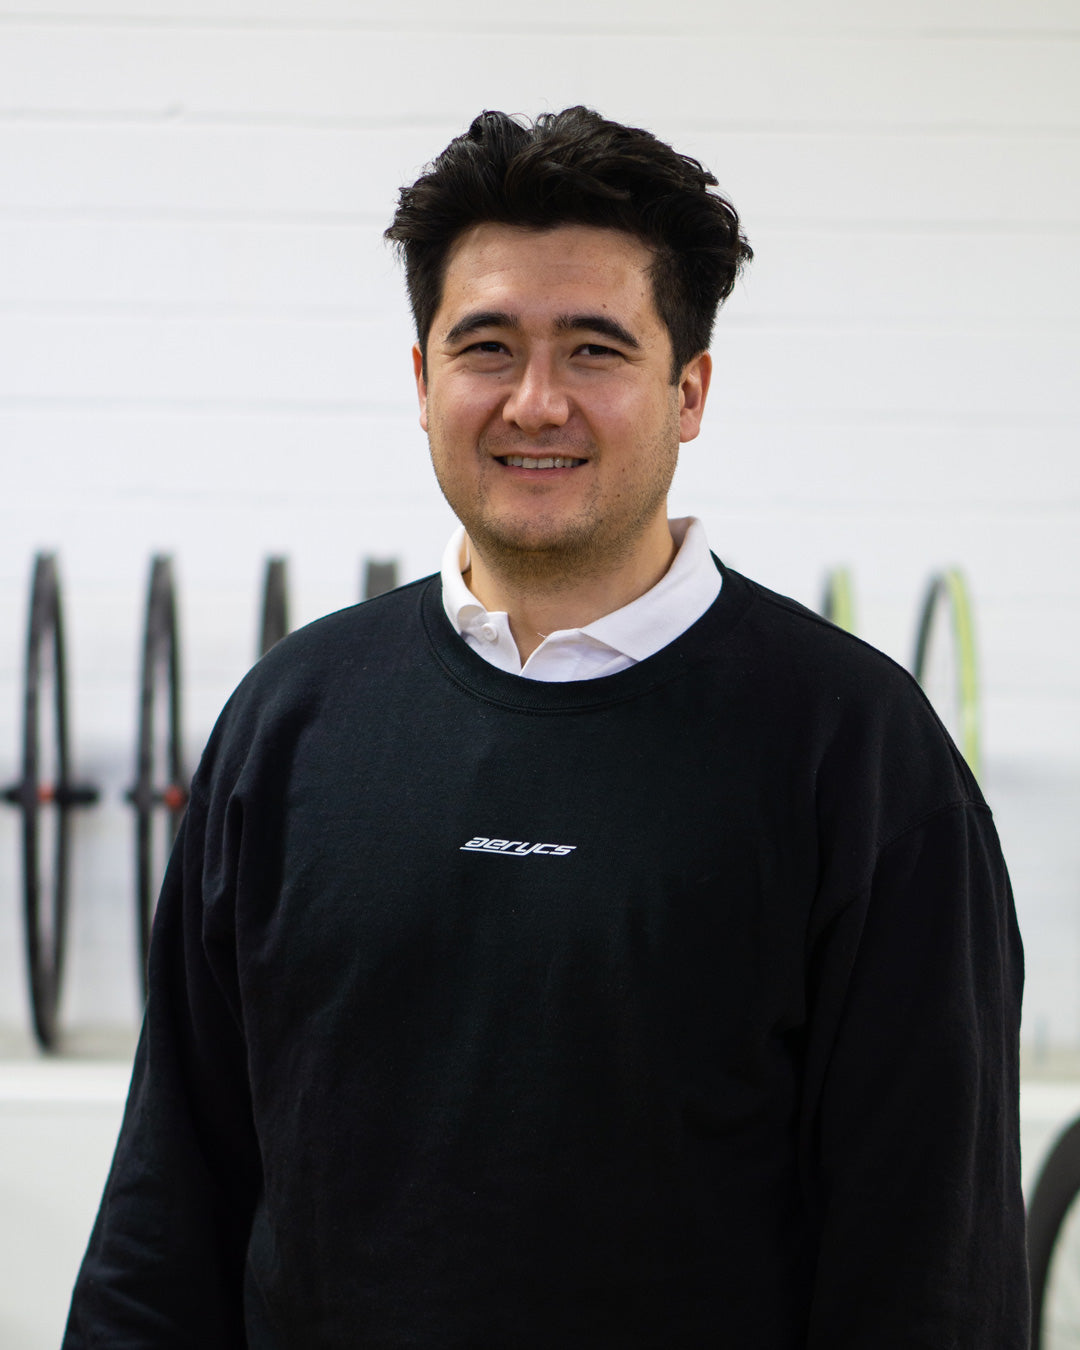 Anthony mit einem aerycs Sweatshirt mit einer weißer Wand und Fahrradreifen im Hintergrund